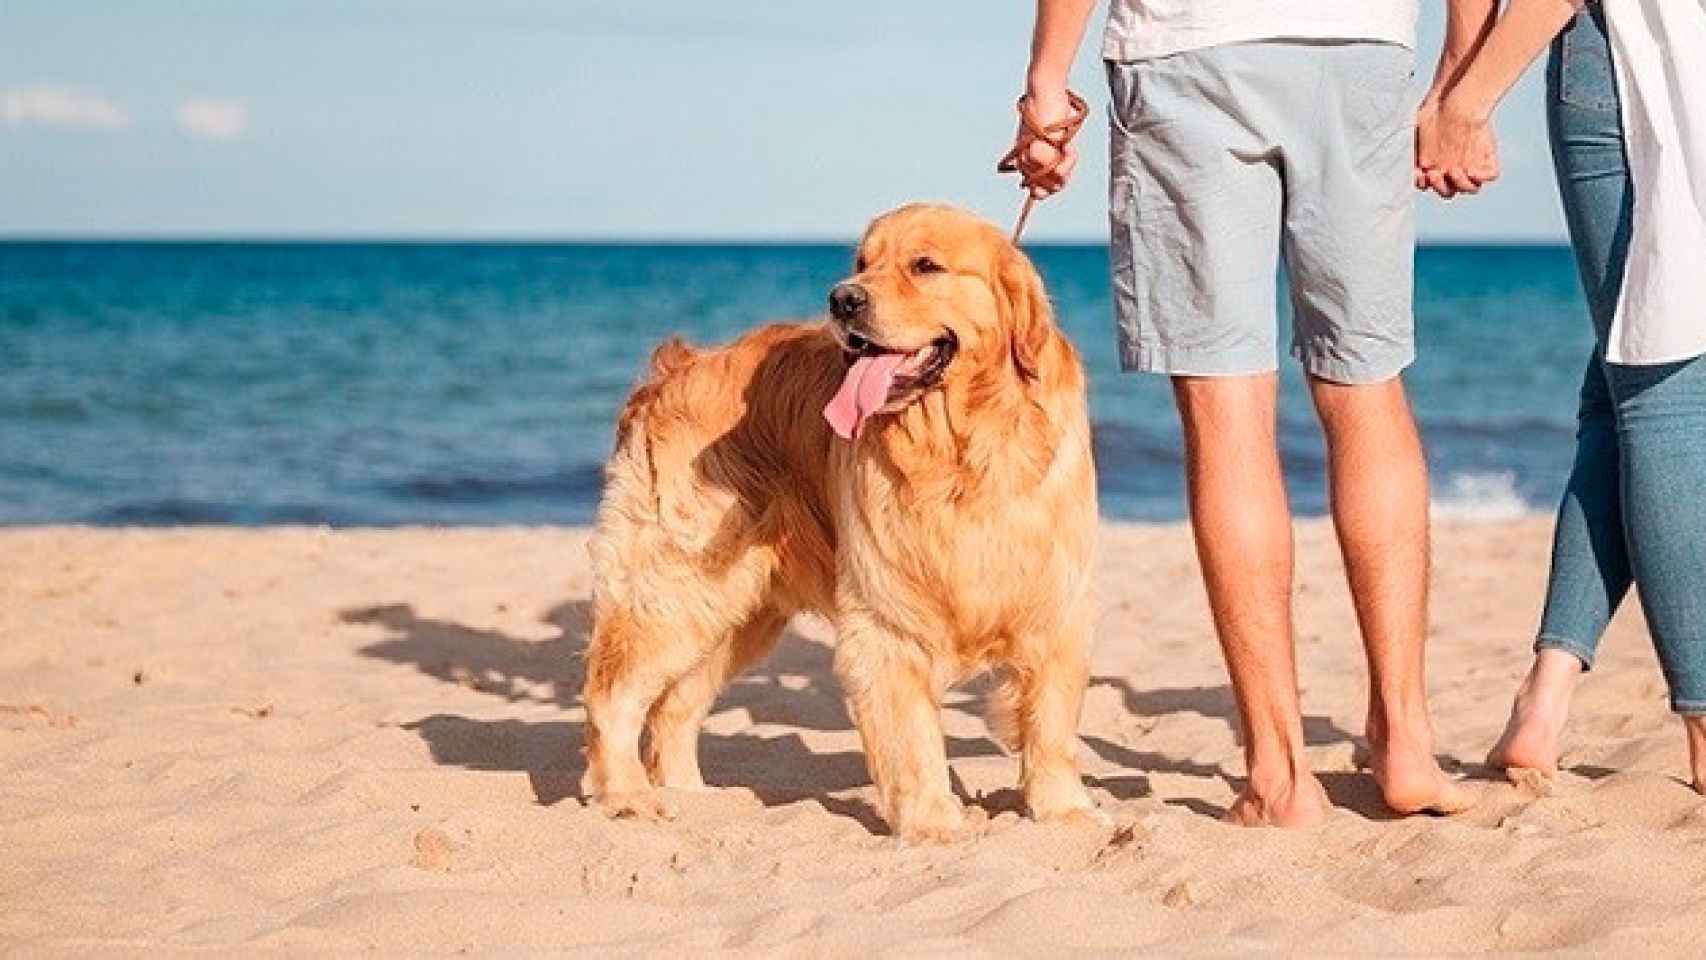 Imagen de archivo de un perro en una playa / HOSBEC - EUROPA PRESS